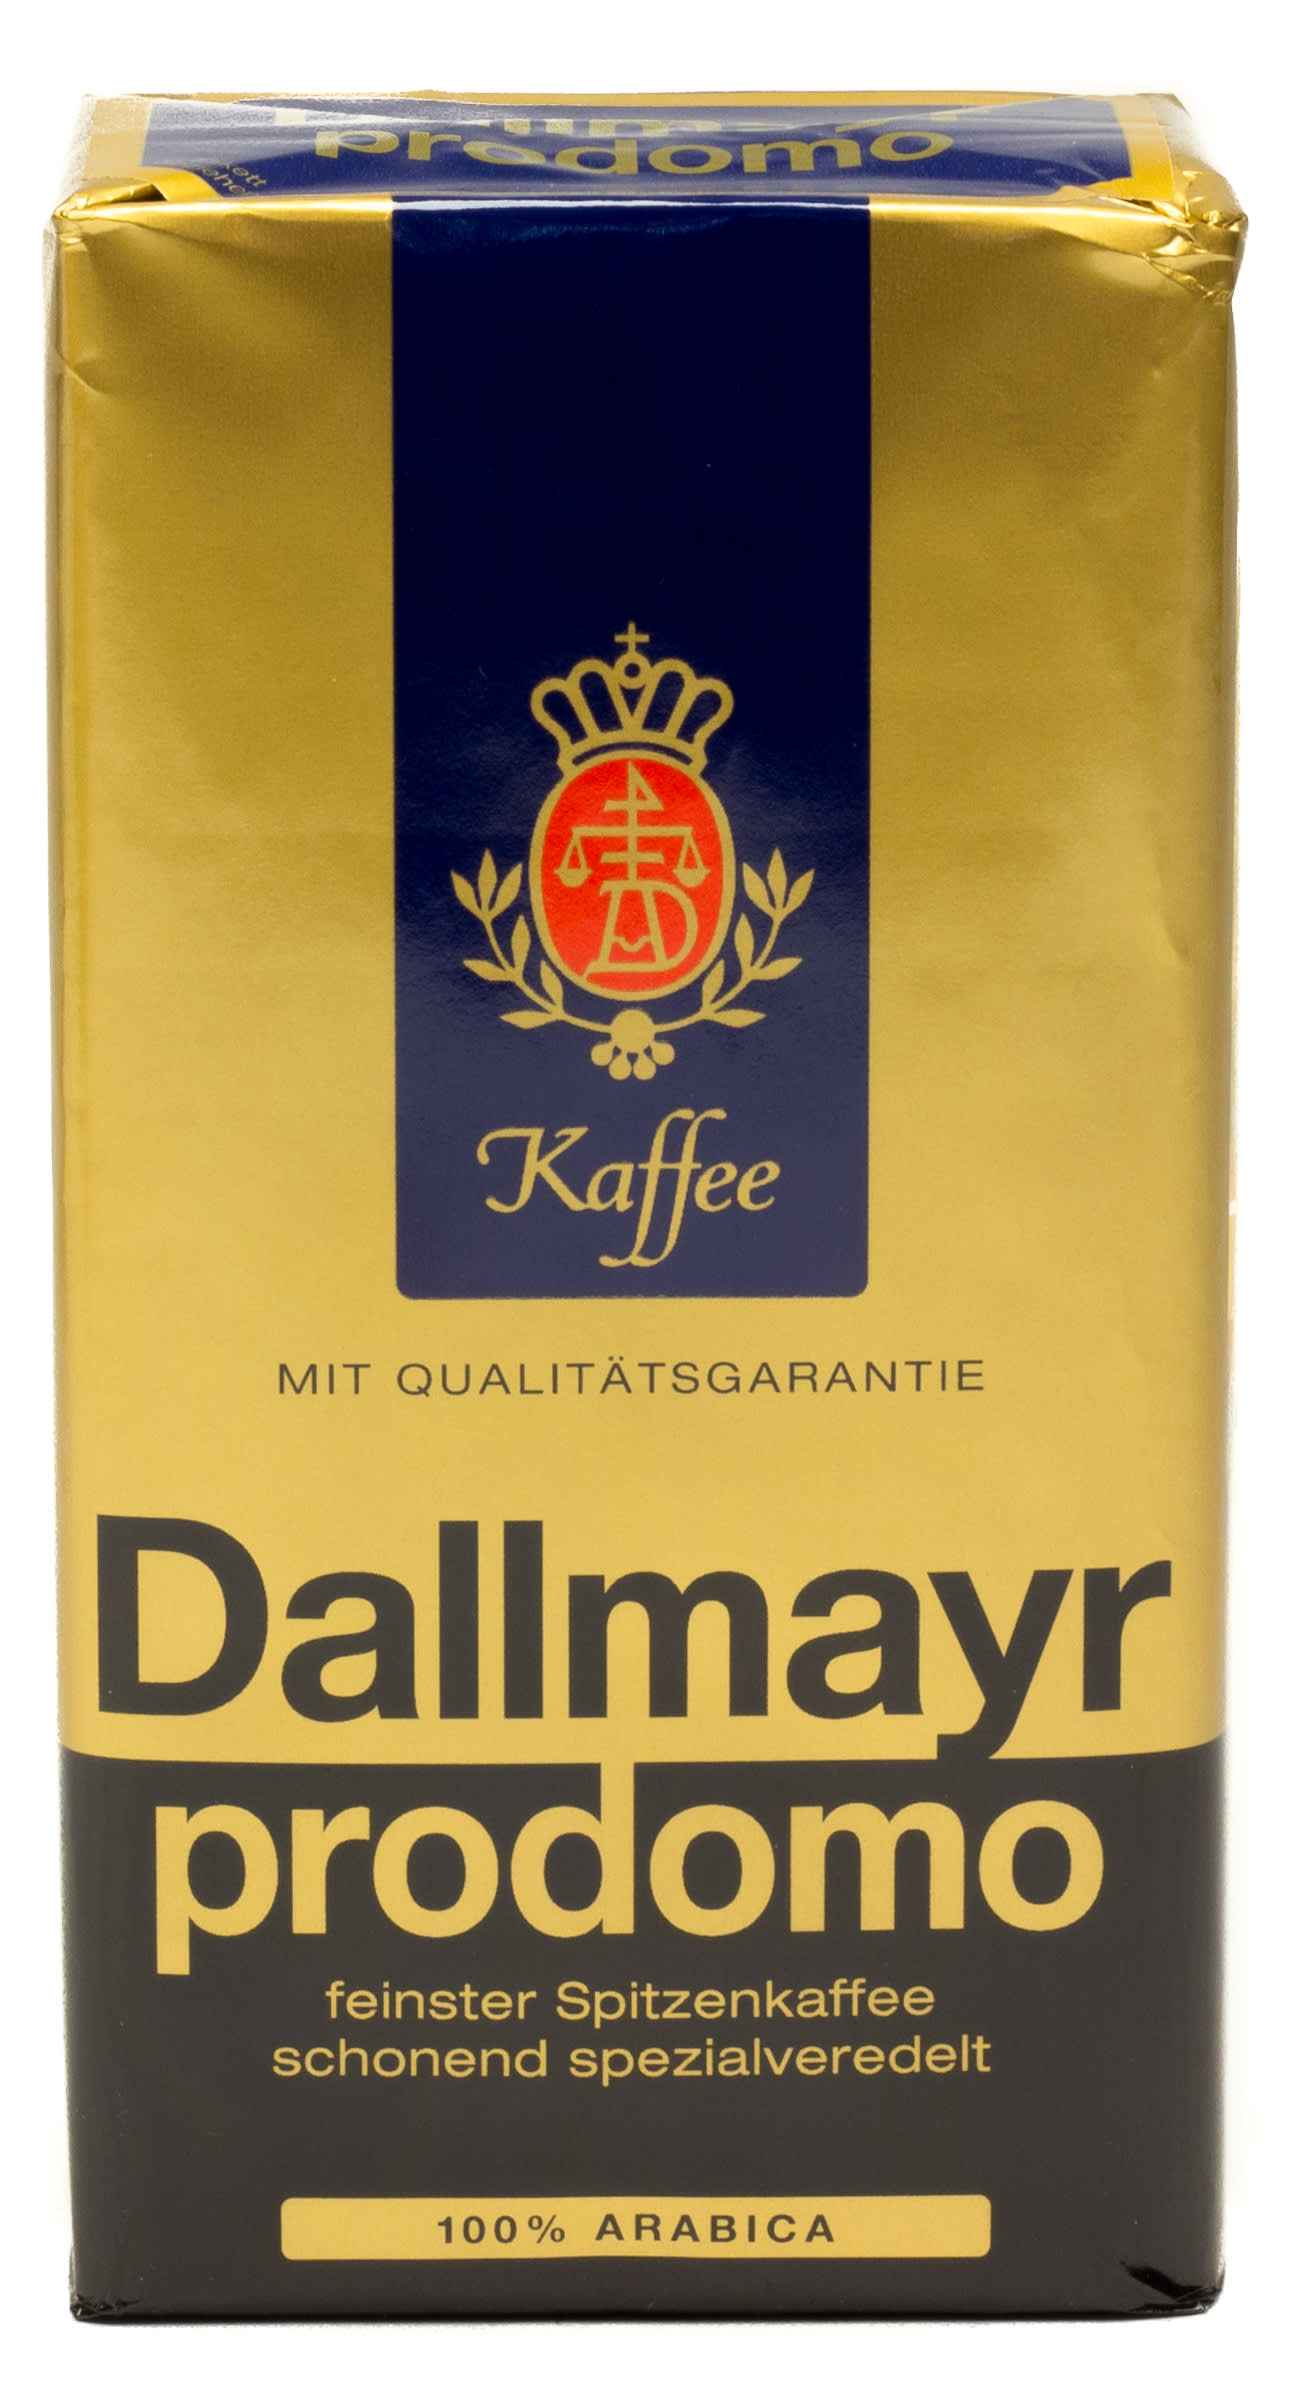 Dallmayr prodomo 100% Arabica 500 g